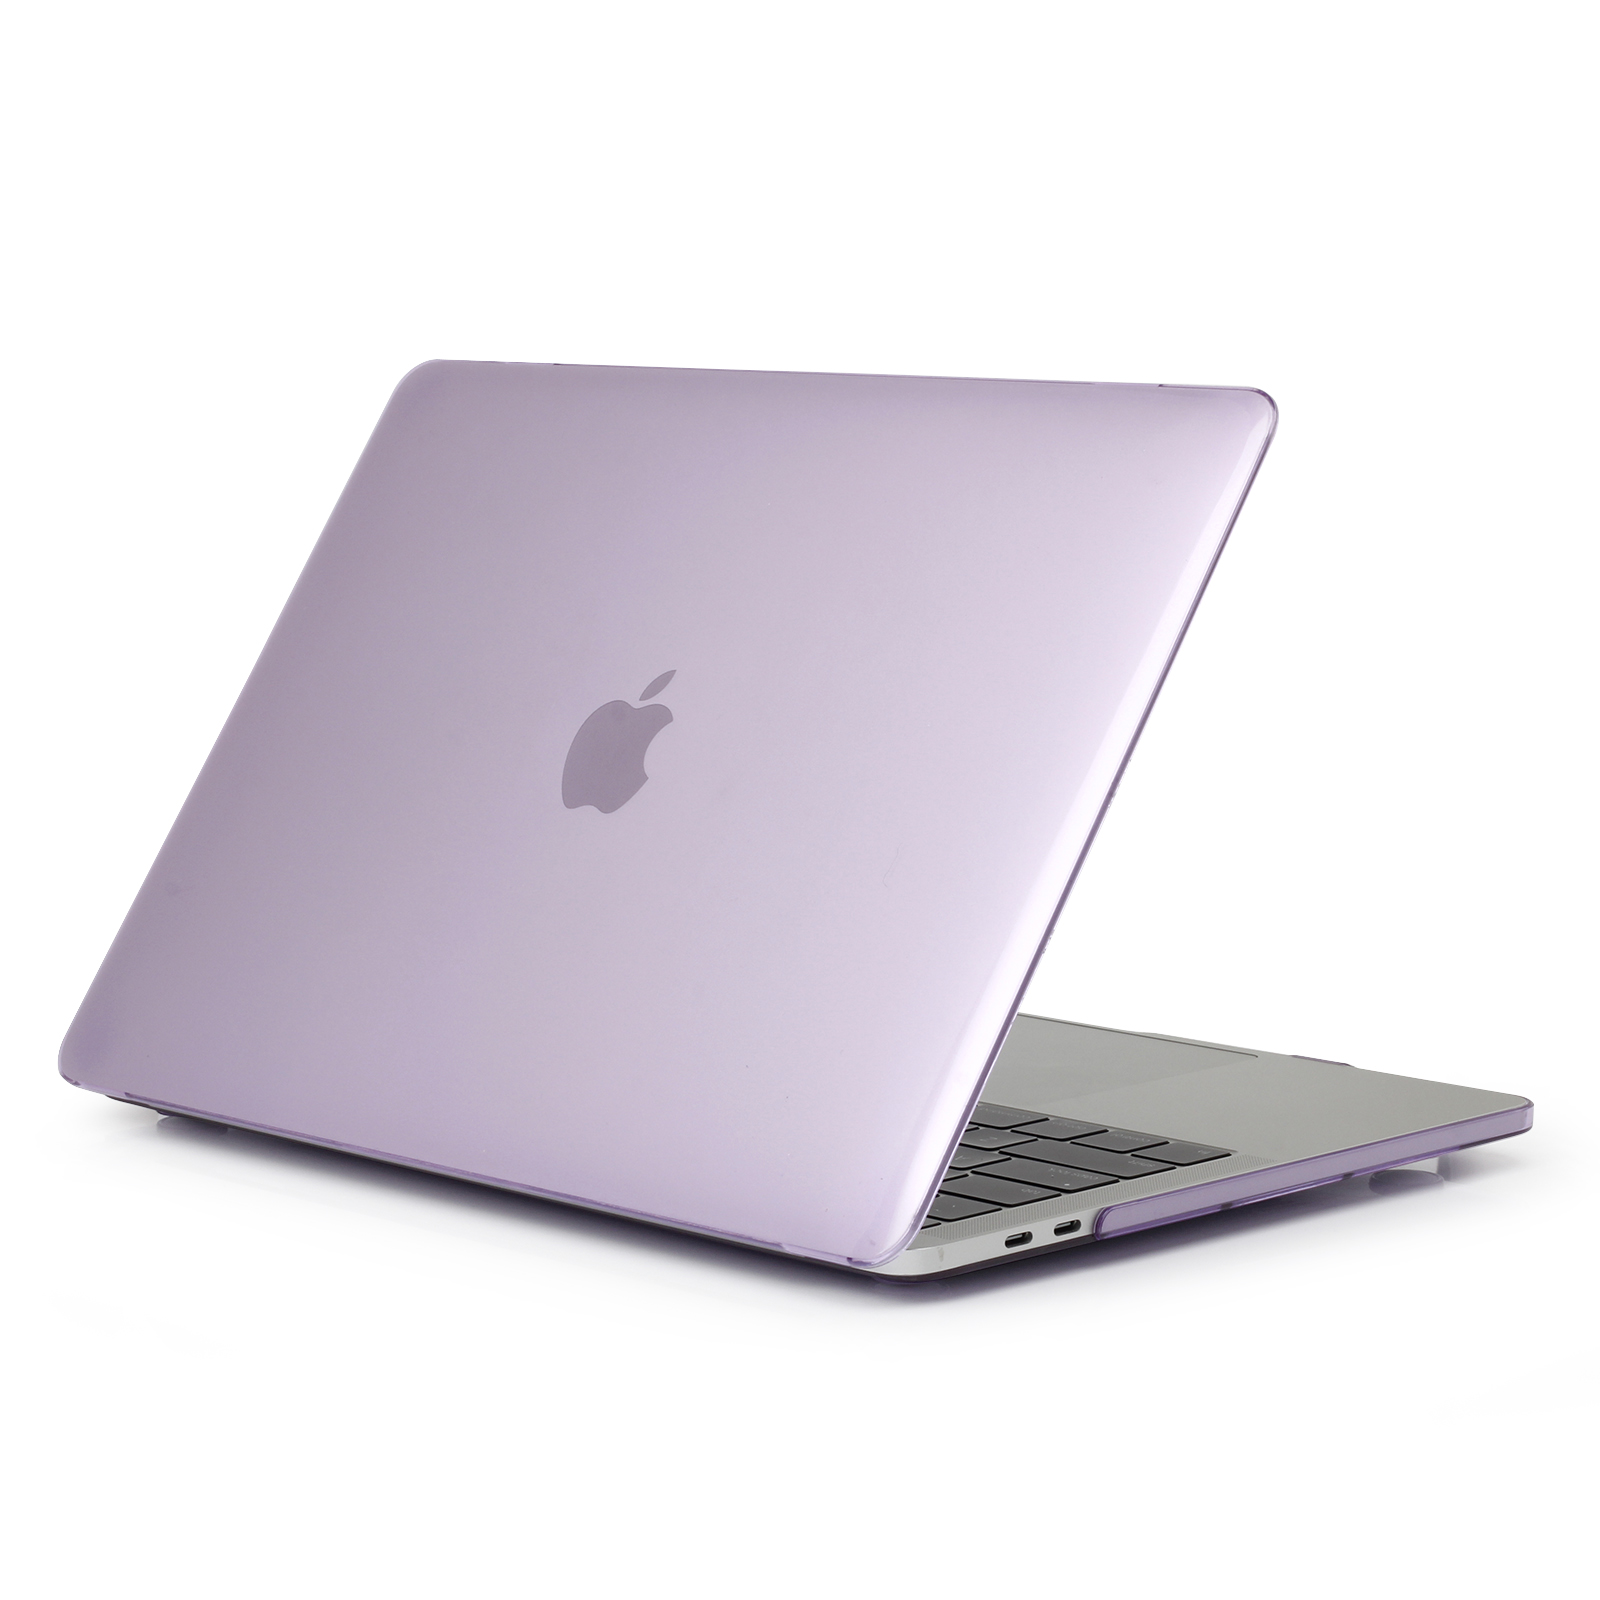 iPouzdro.cz pro MacBook Pro 13 (2012-2015) 2222221001934 fialová